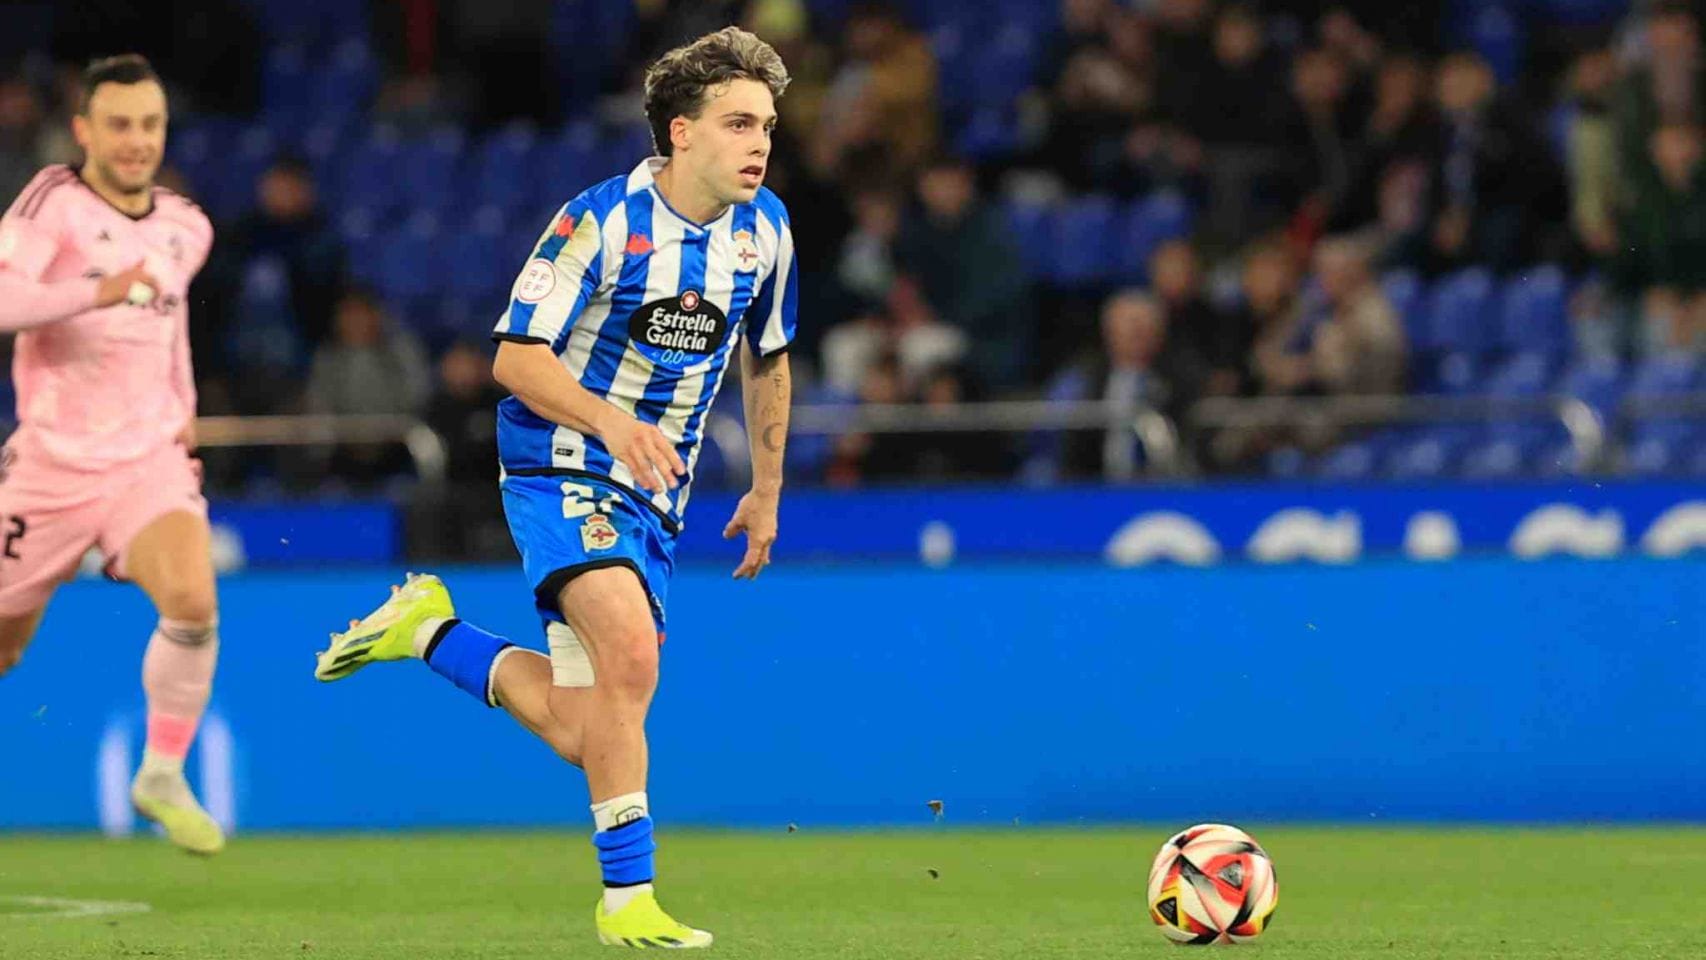 David Mella, 18 years old and rising star of Deportivo La Coruña.